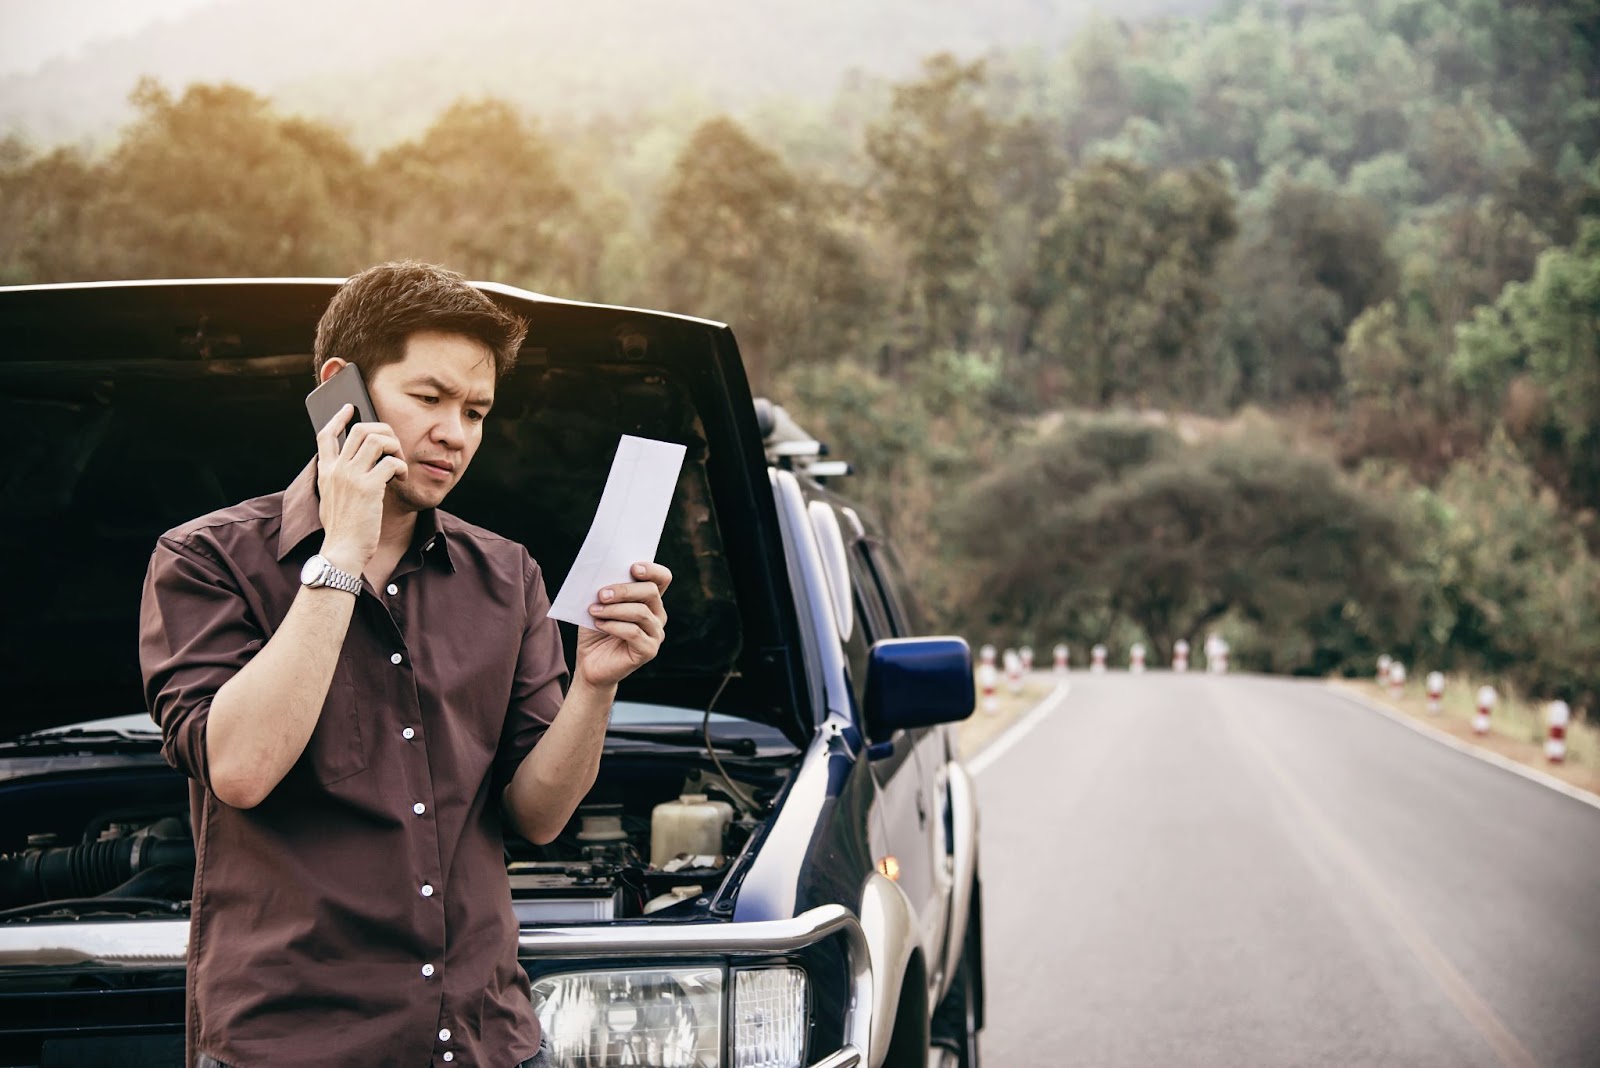 Na imagem há um homem de camisa marrom observando uma multa por falta de Certificado de Segurança Veicular enquanto fala ao telefone ao lado de um carro com o capô aberto.